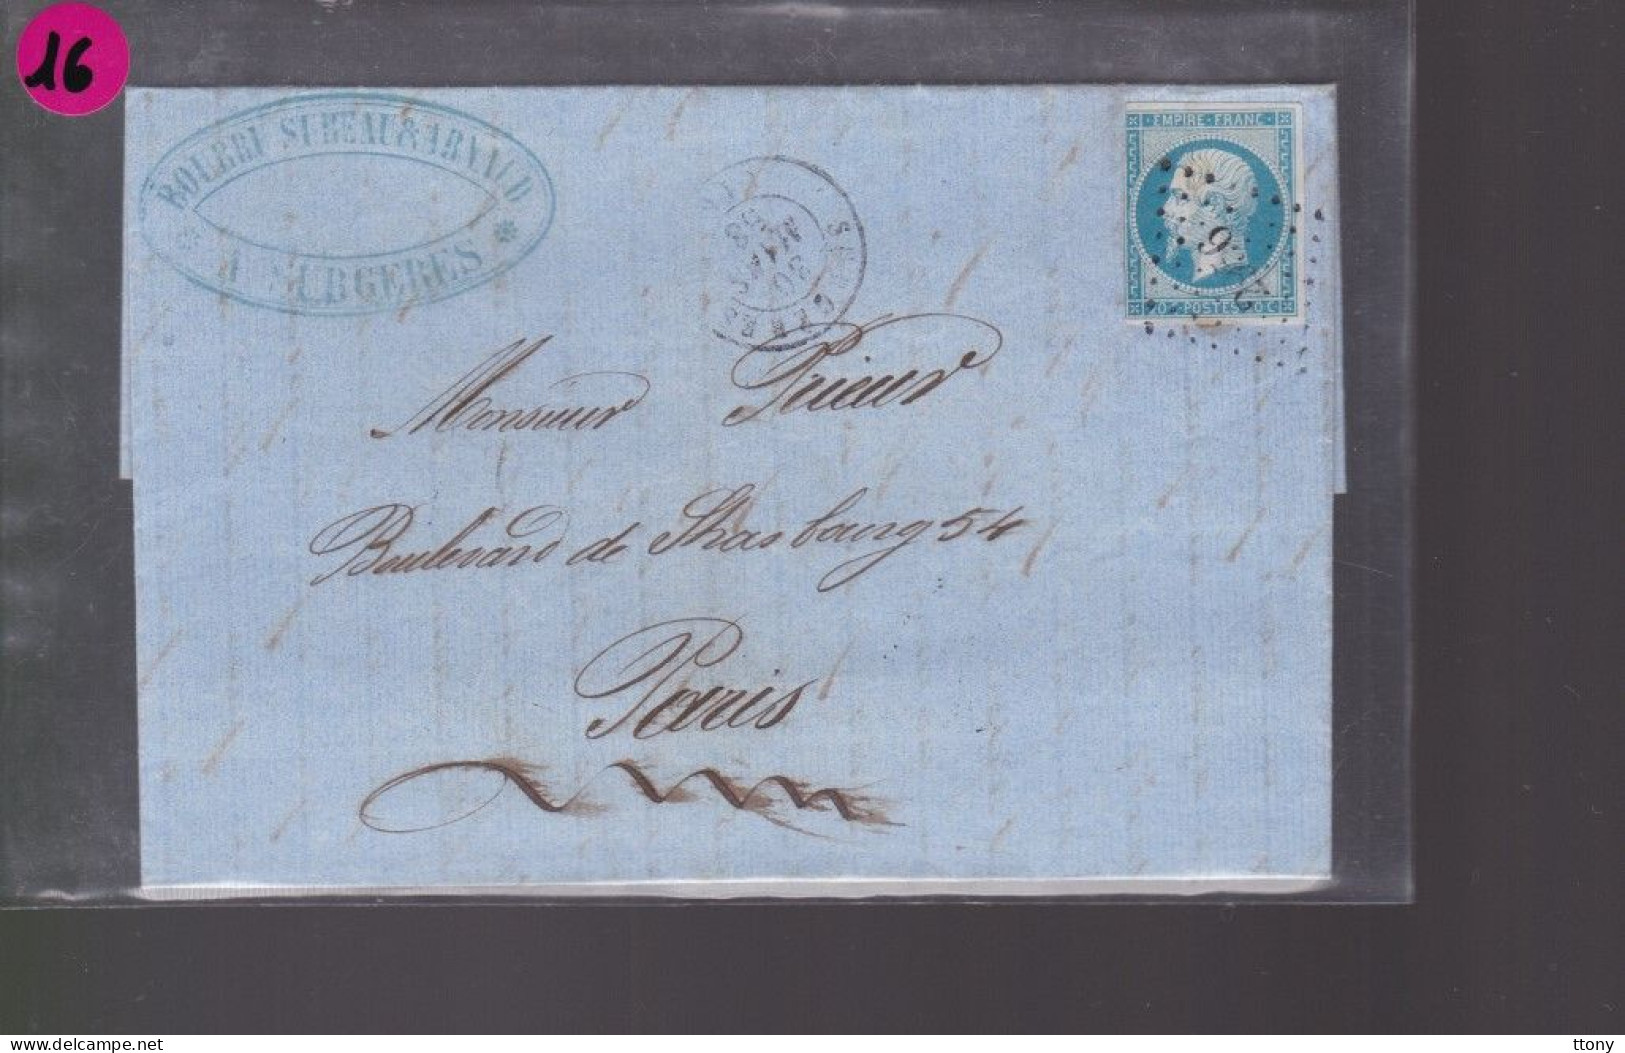 10  lettres  timbre n° 14 Napoléon III  bleu     20 c   sur lettre destination St Etienne &   Paris